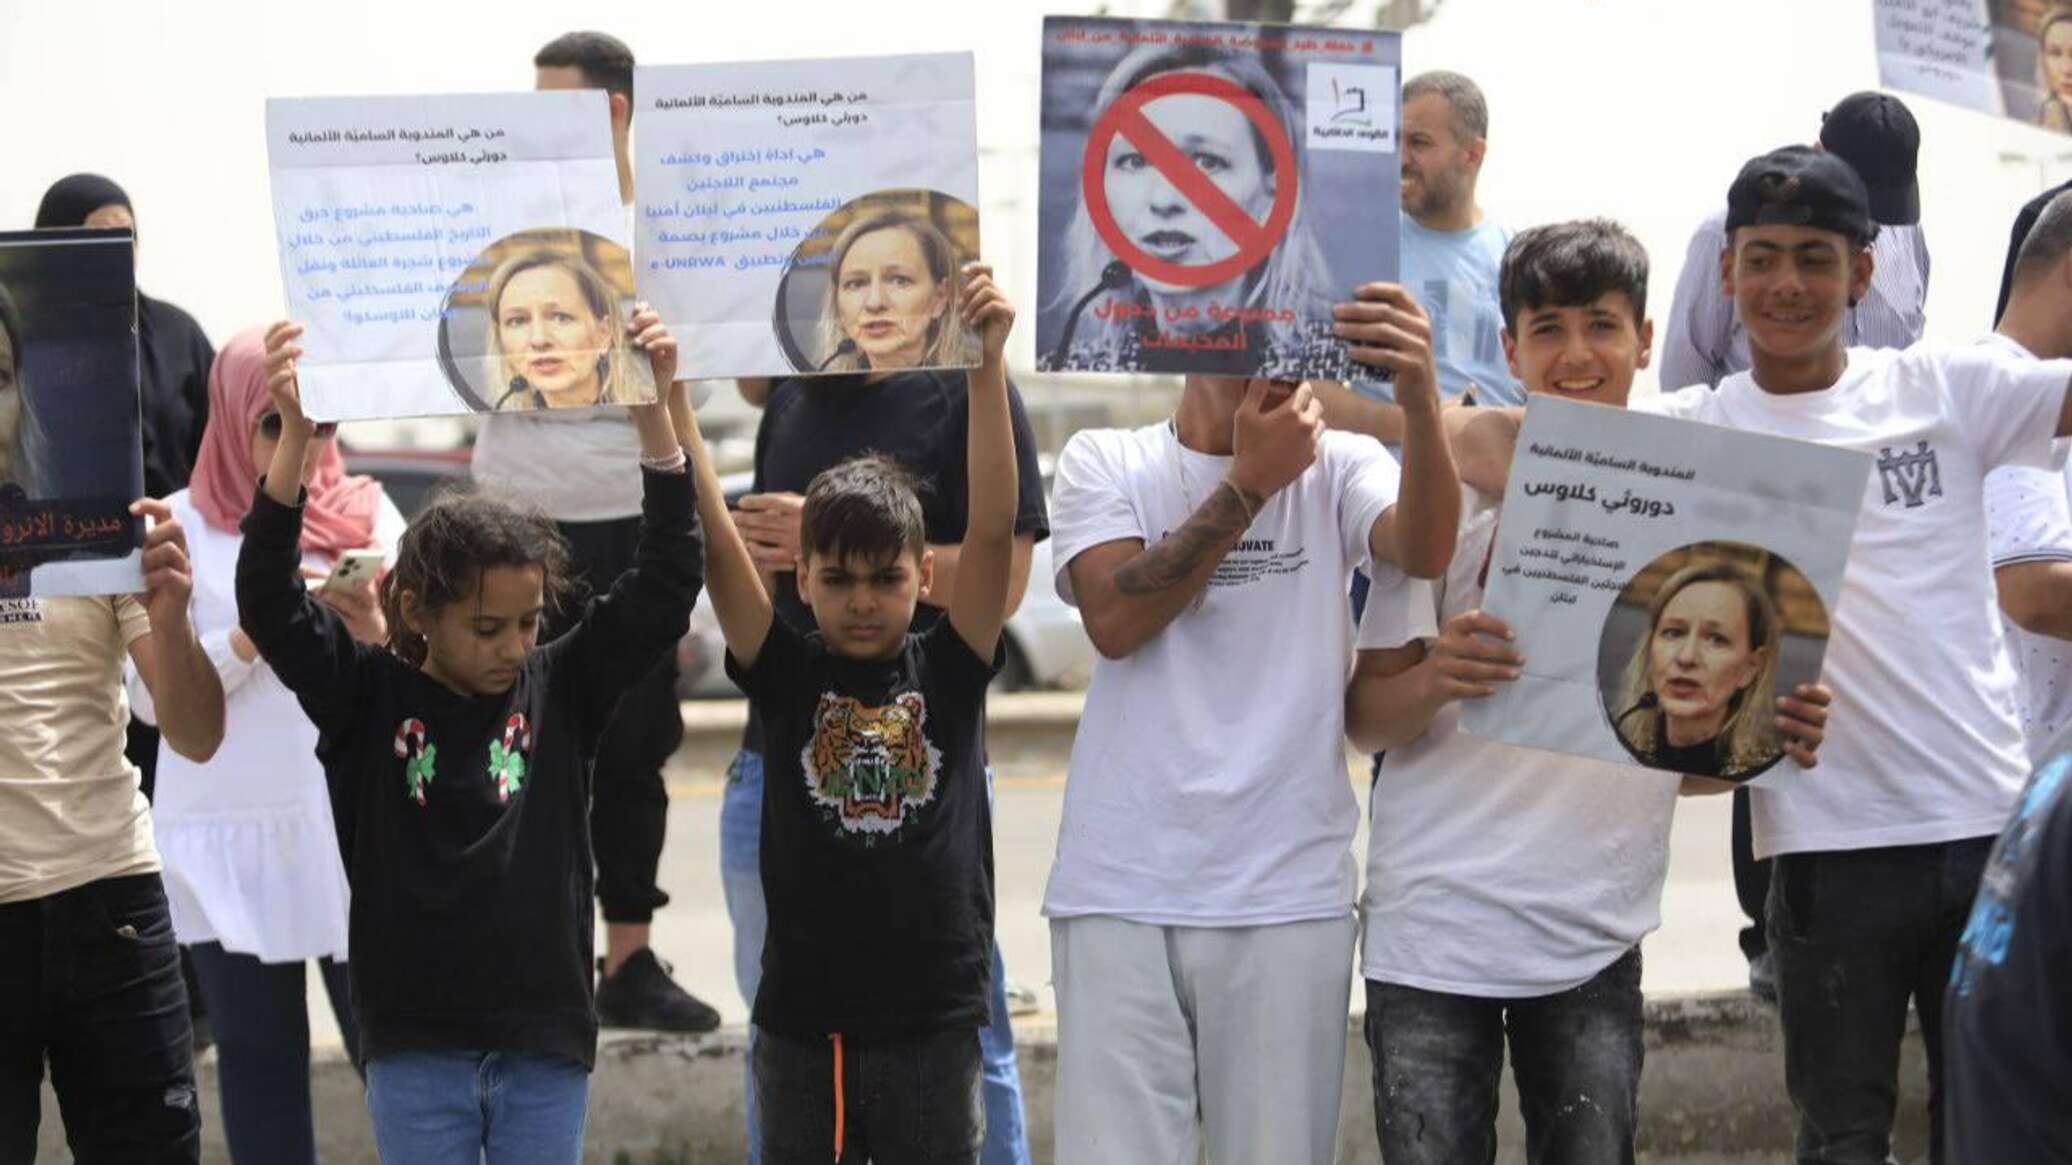 اتحاد المعلمين لدى وكالة "أونروا" في لبنان ينفذ اعتصاما دعما لغزة... صور